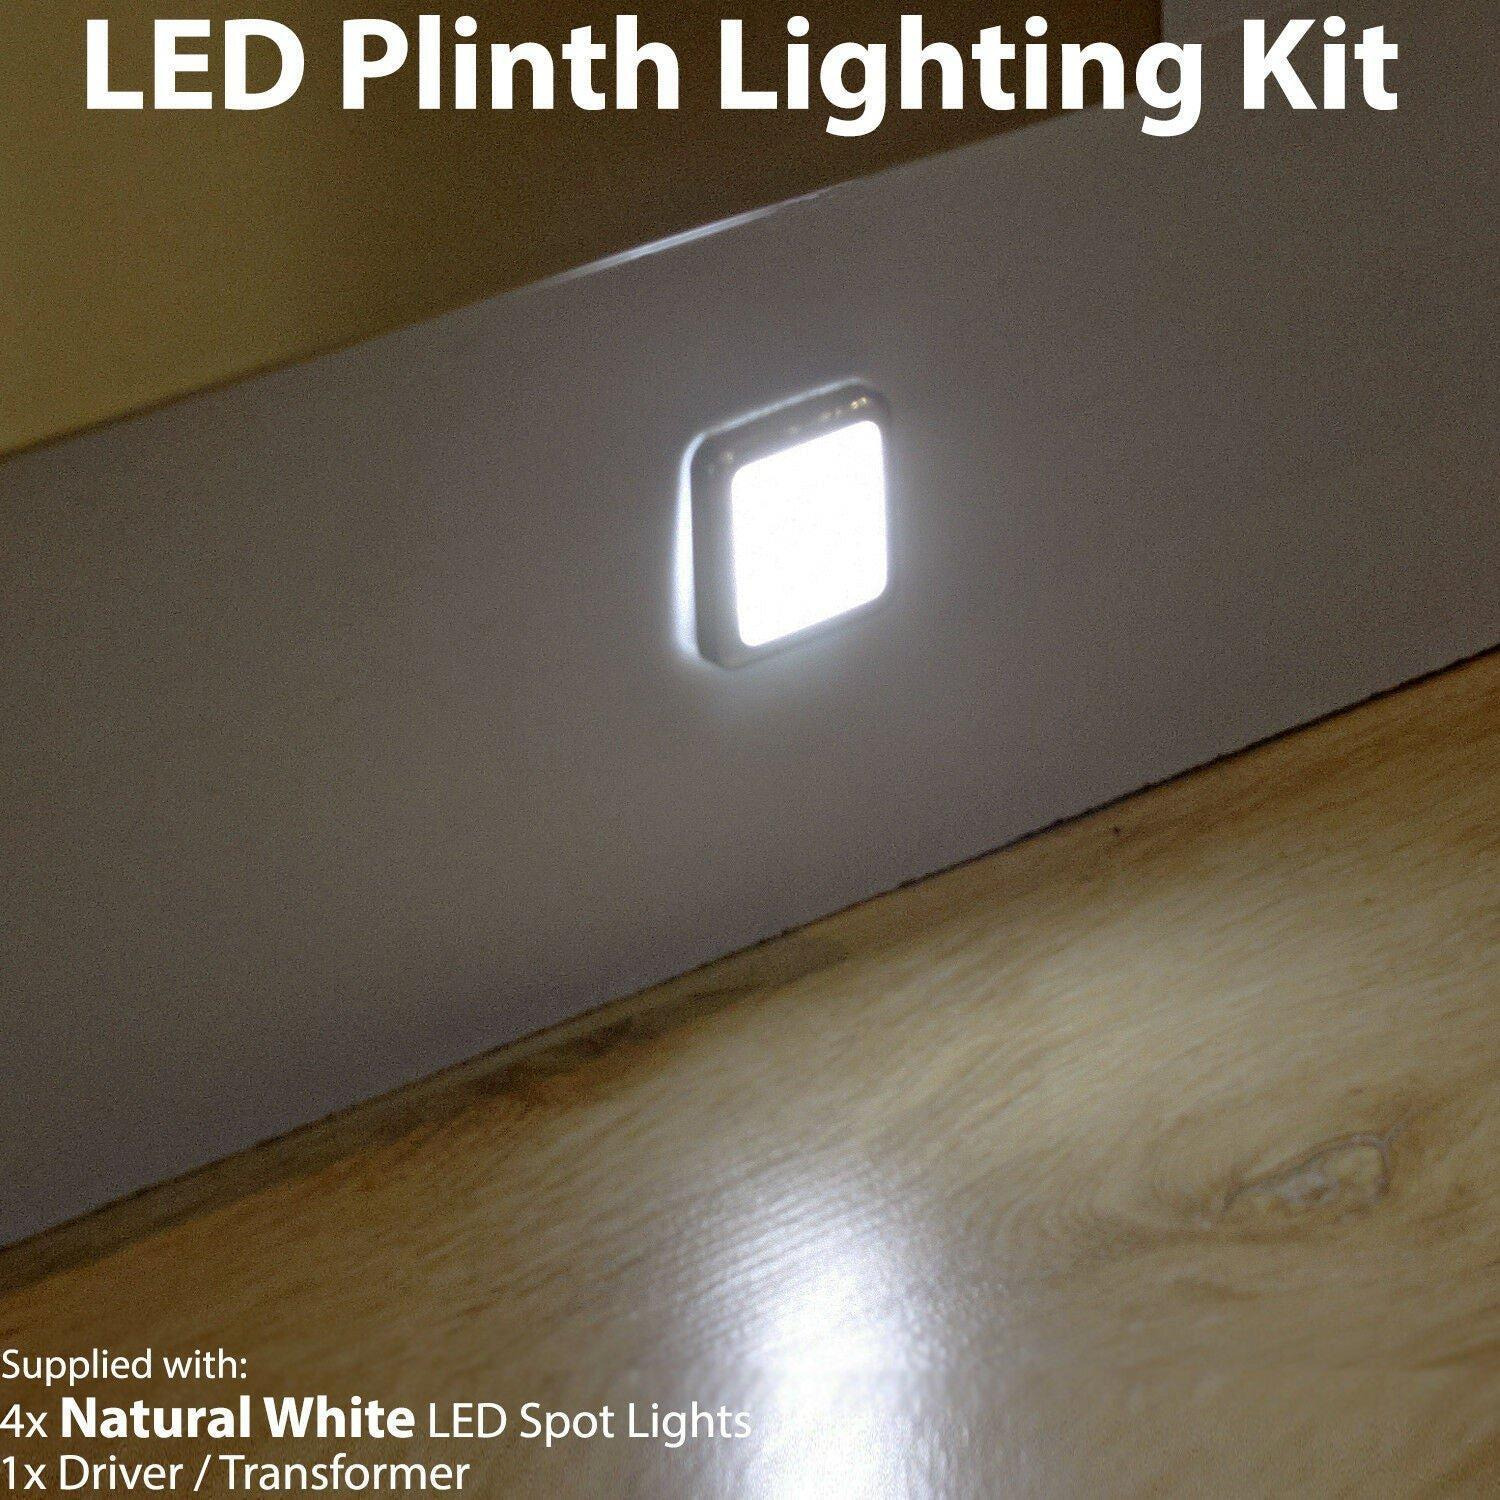 Square LED Plinth Light Kit 4 NATURAL WHITE Spotlights Kitchen Bathroom Panel - image 1